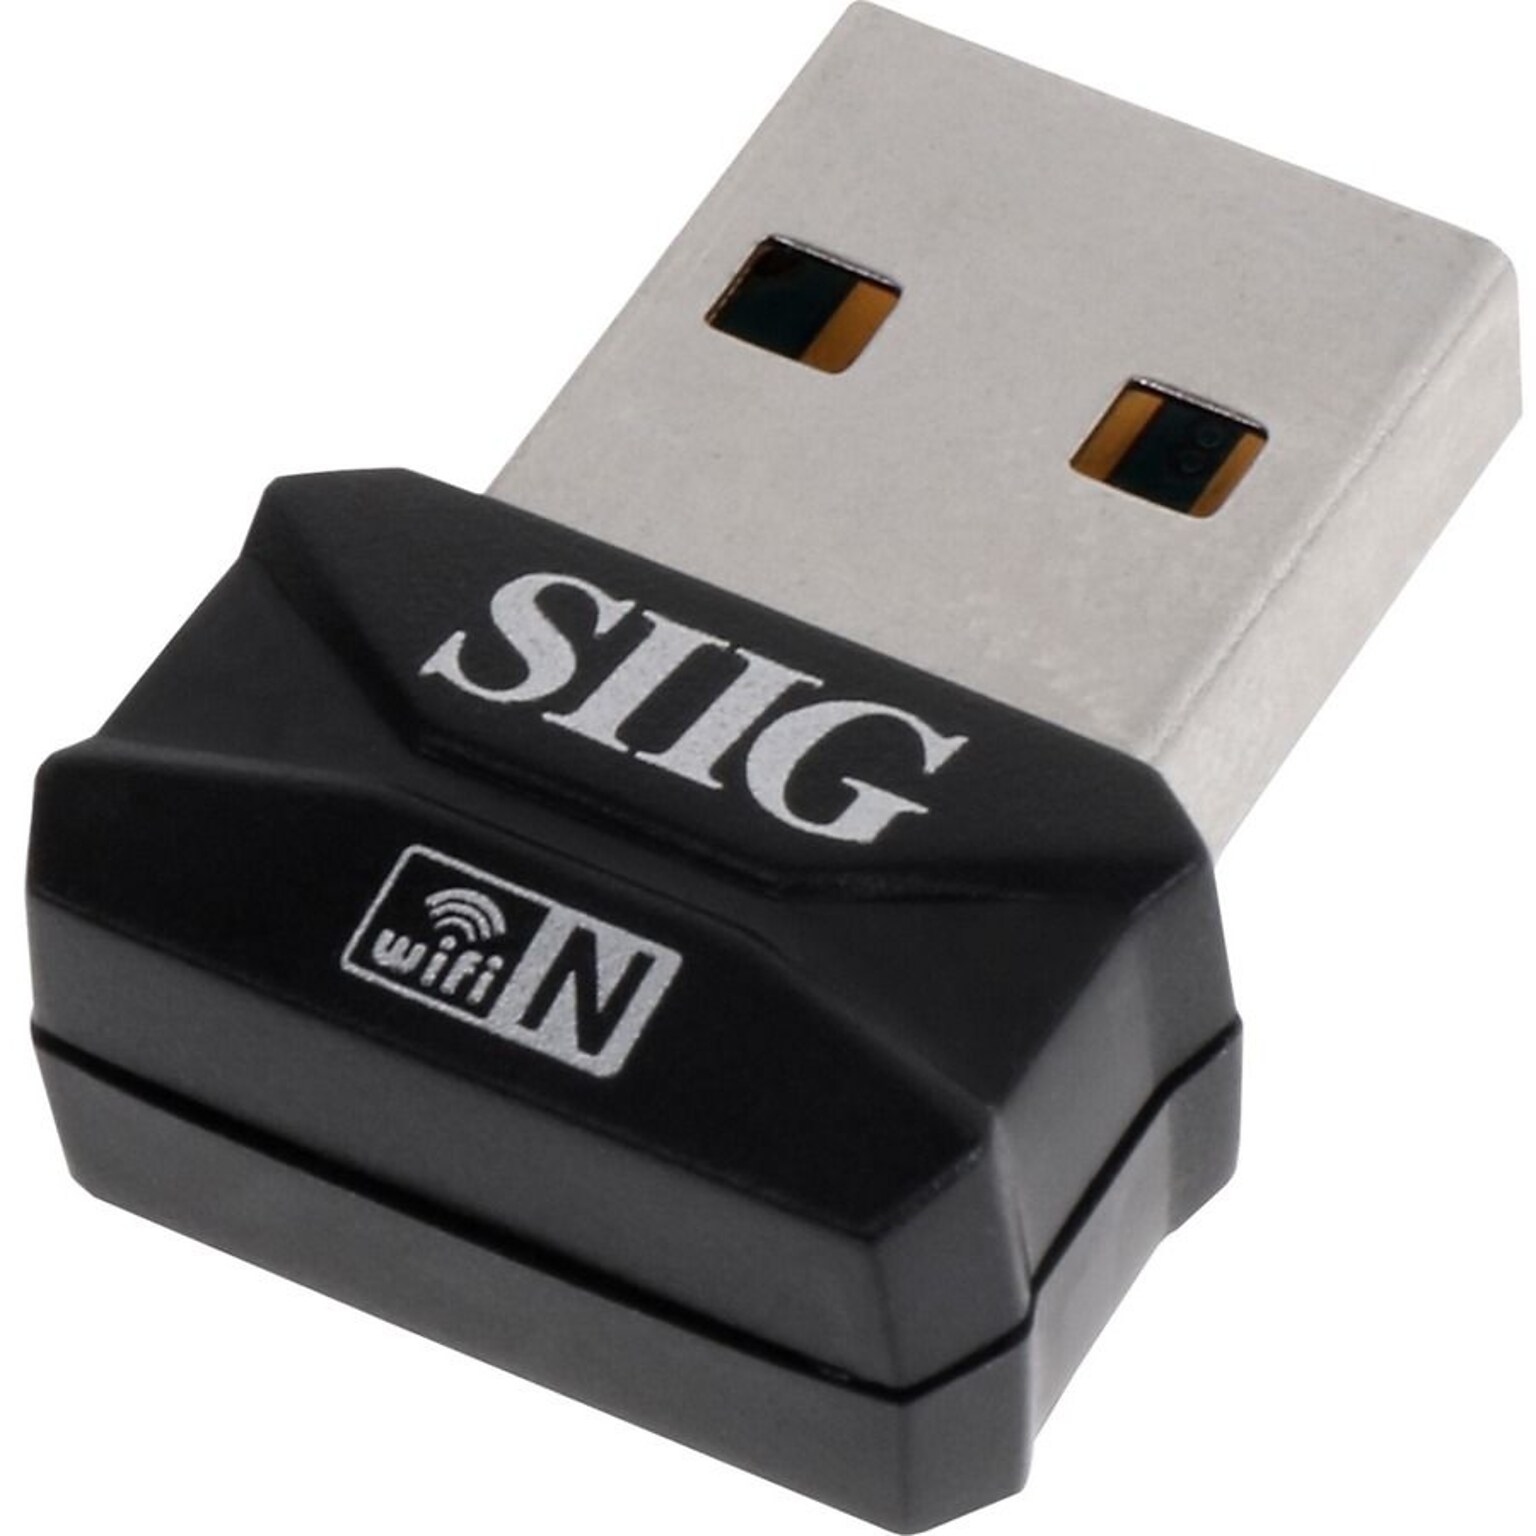 SIIG IEEE 802.11n, Wi-Fi Adapter for Desktop Computer/Notebook